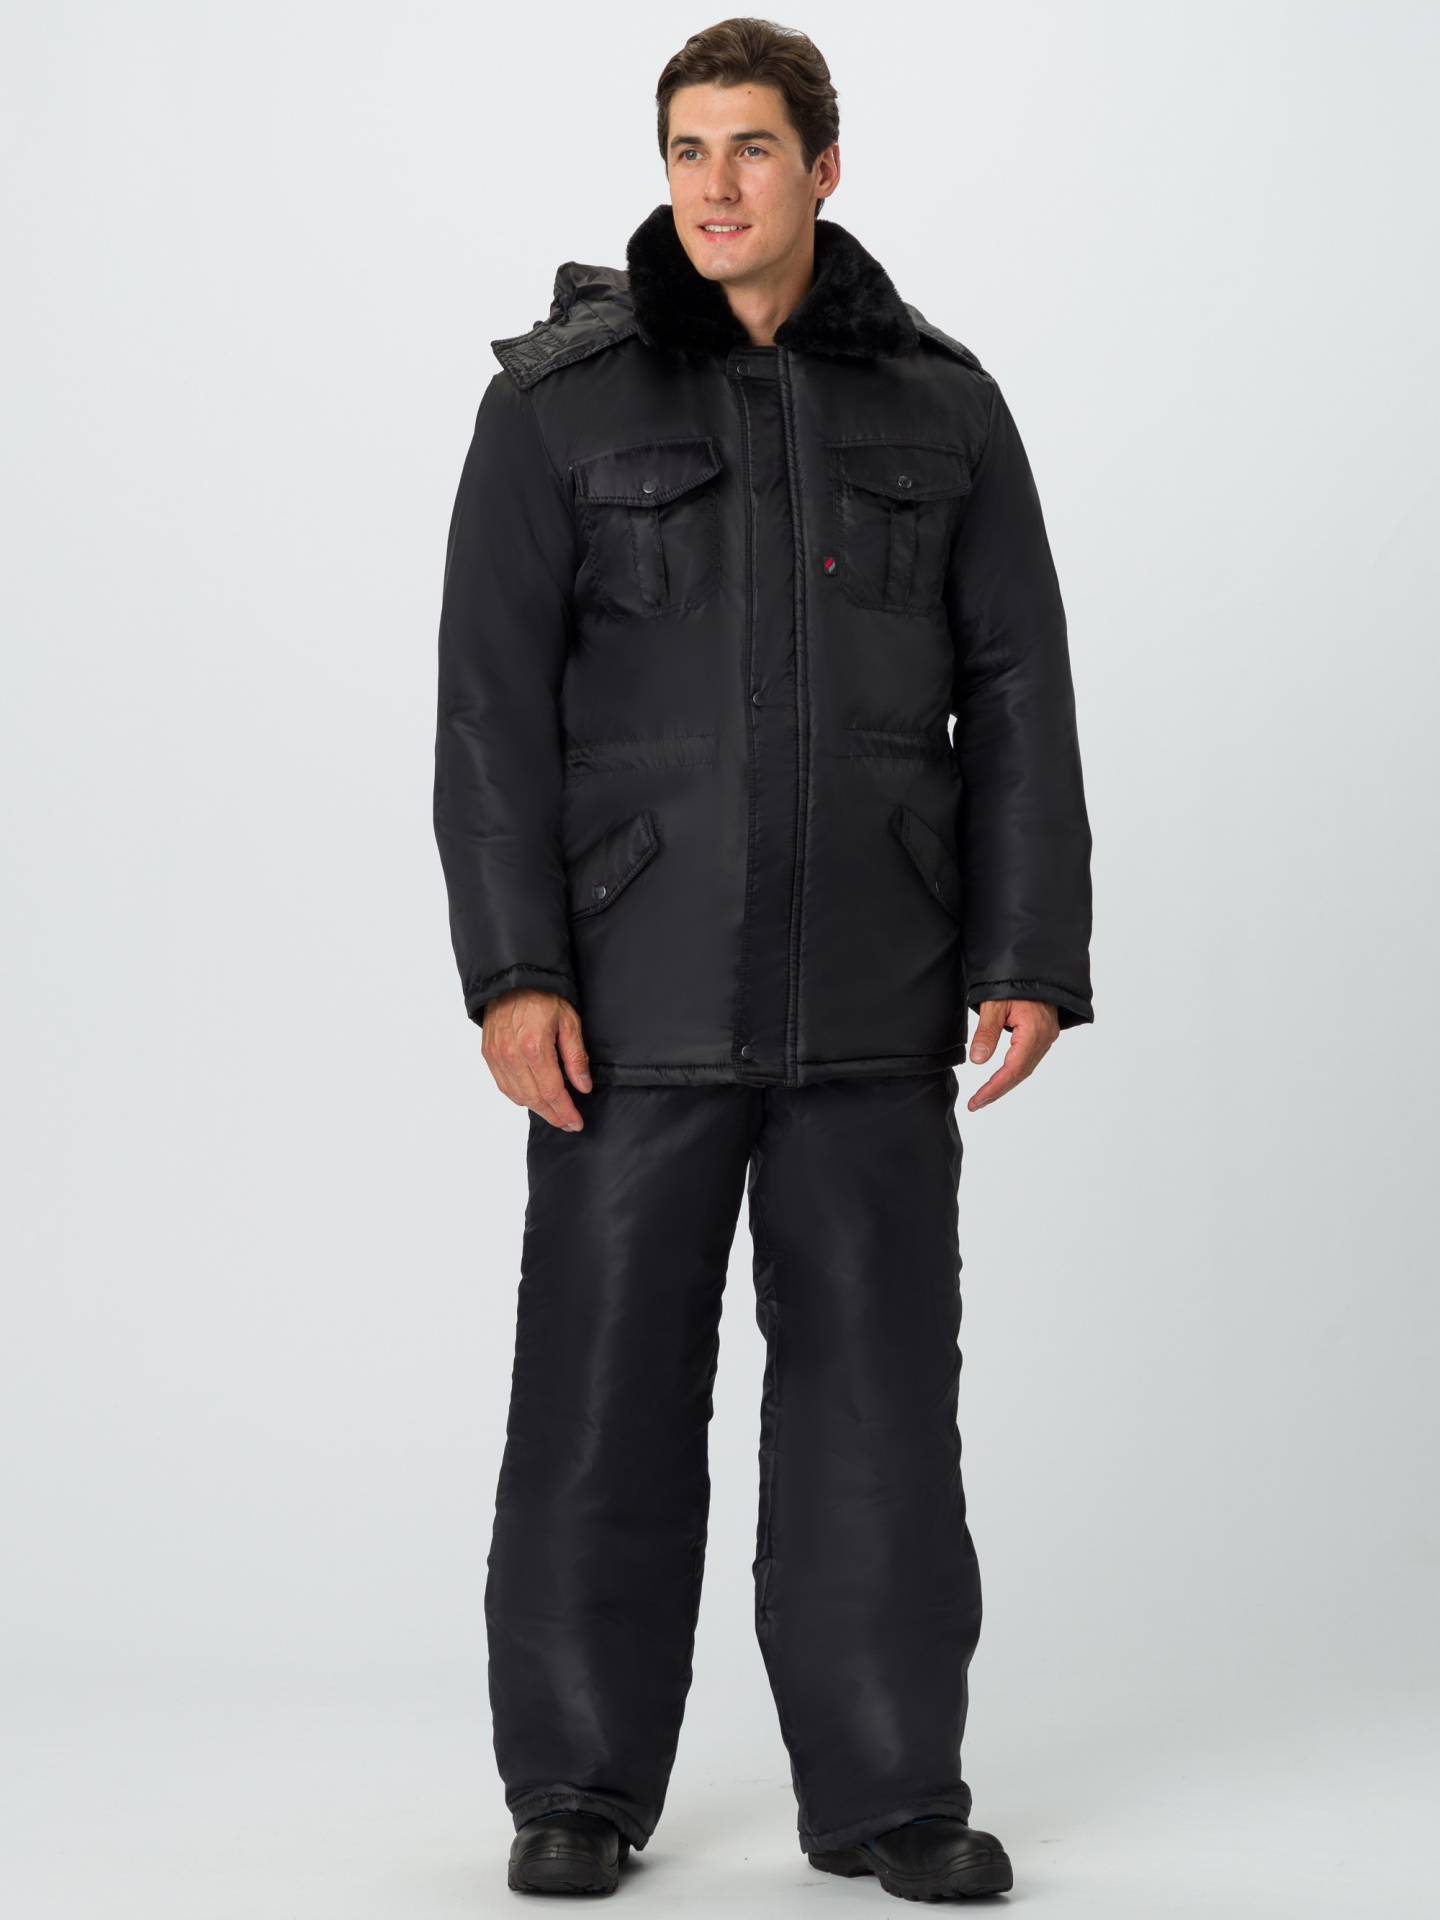 Зимний костюм Факел для охранника мужской утепленный (куртка и брюки), цвет: черный, ткань: смесовая